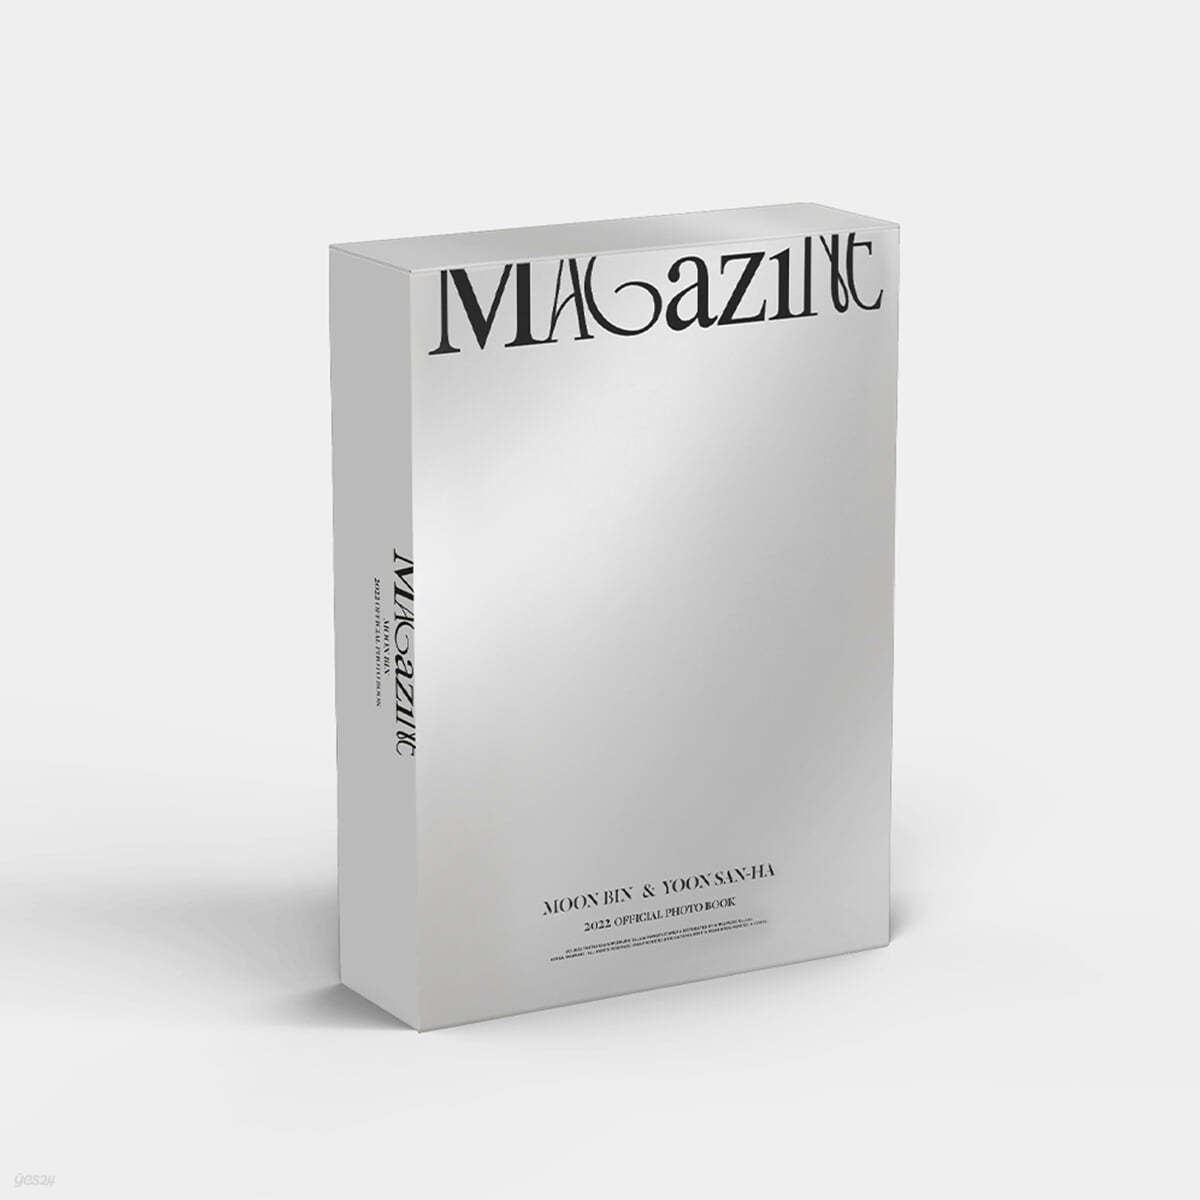 문빈&산하 (ASTRO) - 2022 OFFICIAL PHOTO BOOK [MAGAZINE] (MOONBIN & YOON SAN-HA SET Version)